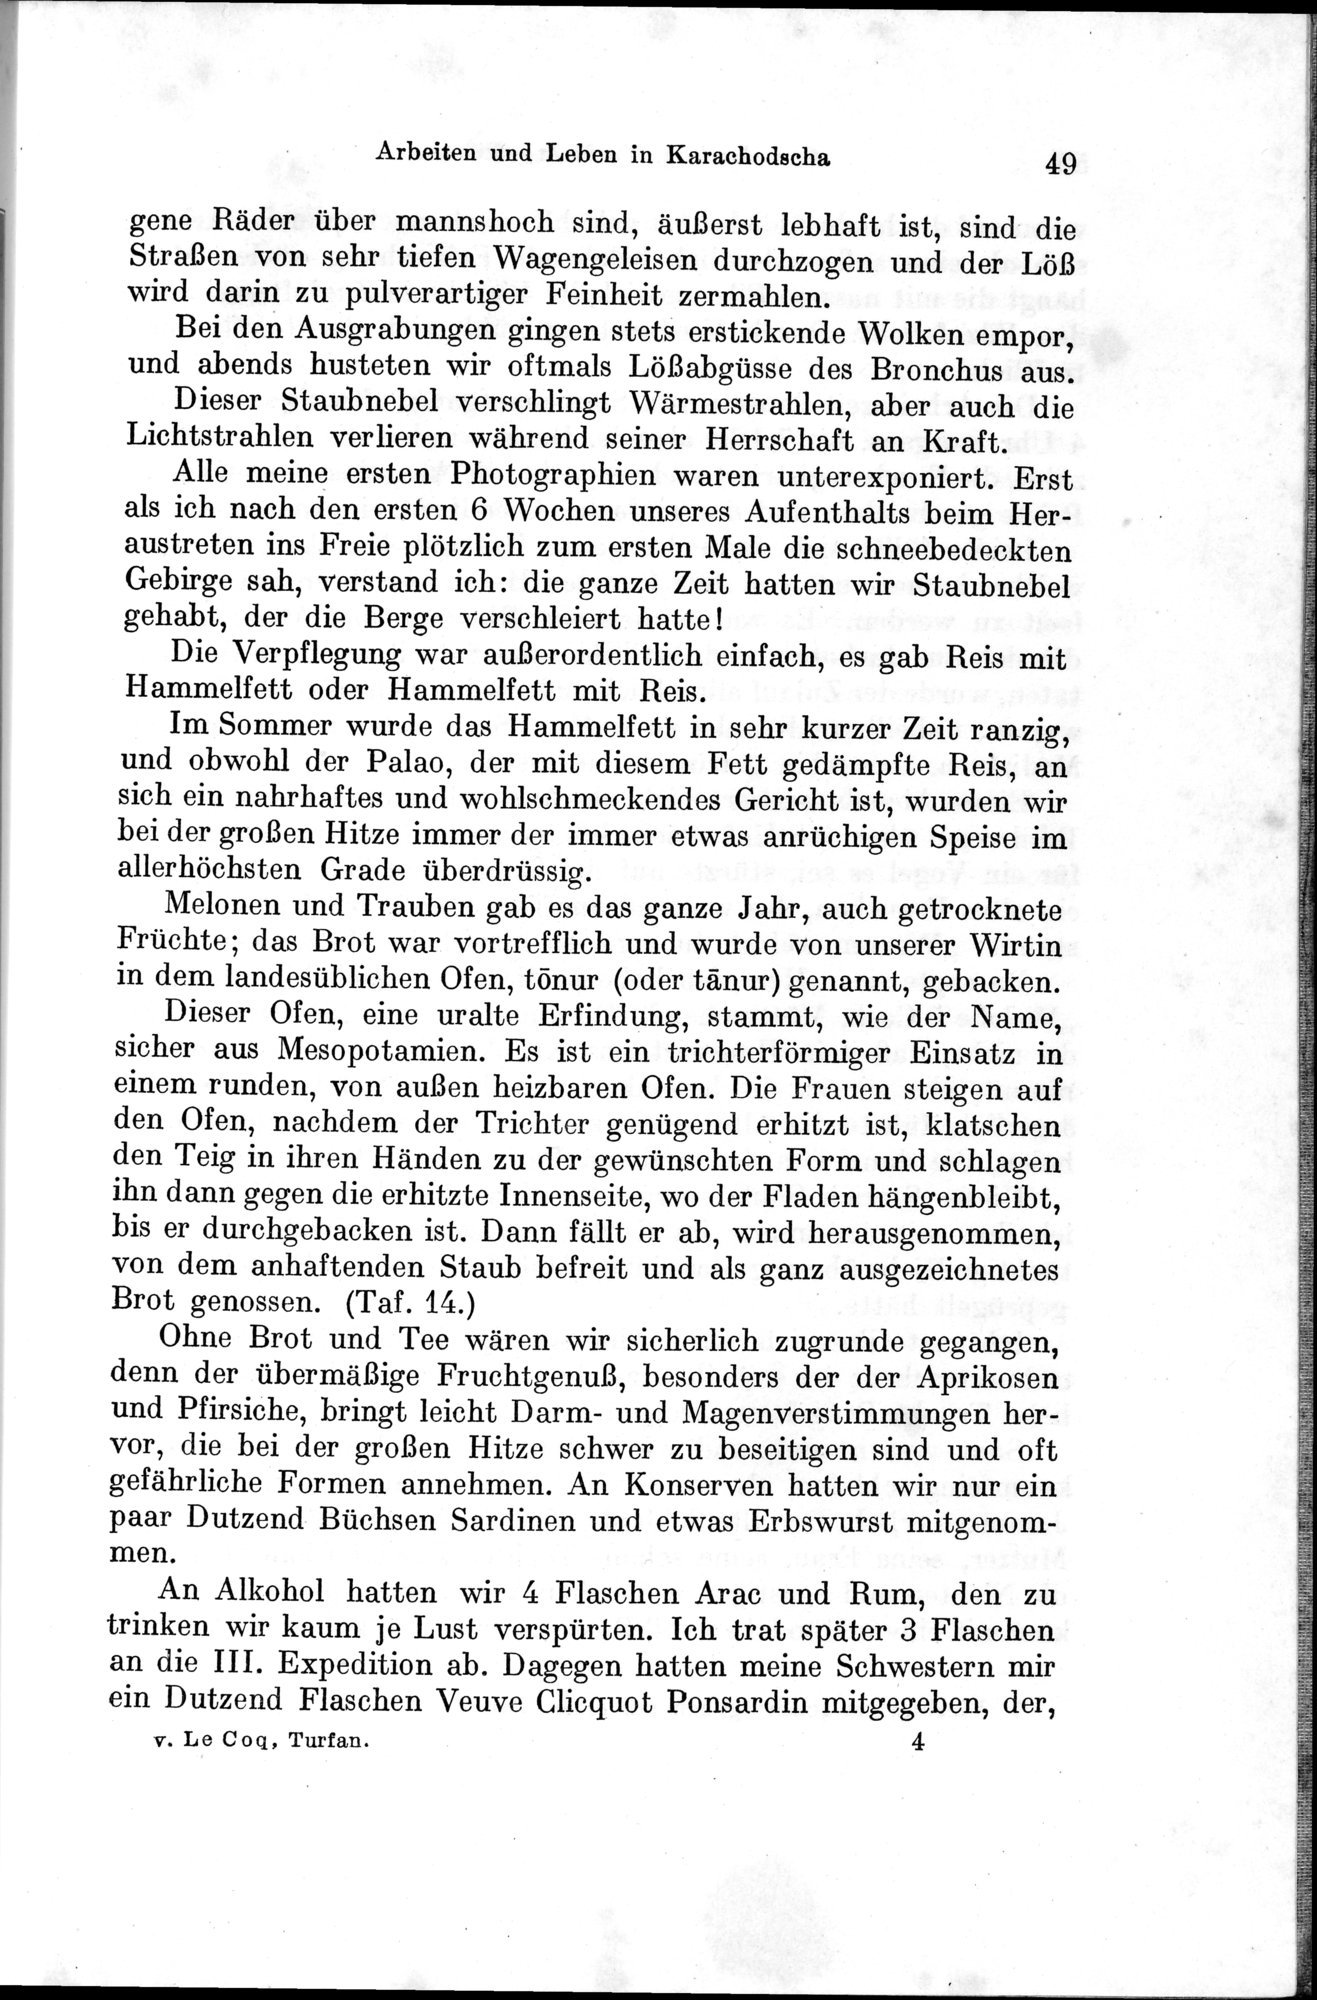 Auf Hellas Spuren in Ostturkistan : vol.1 / Page 77 (Grayscale High Resolution Image)